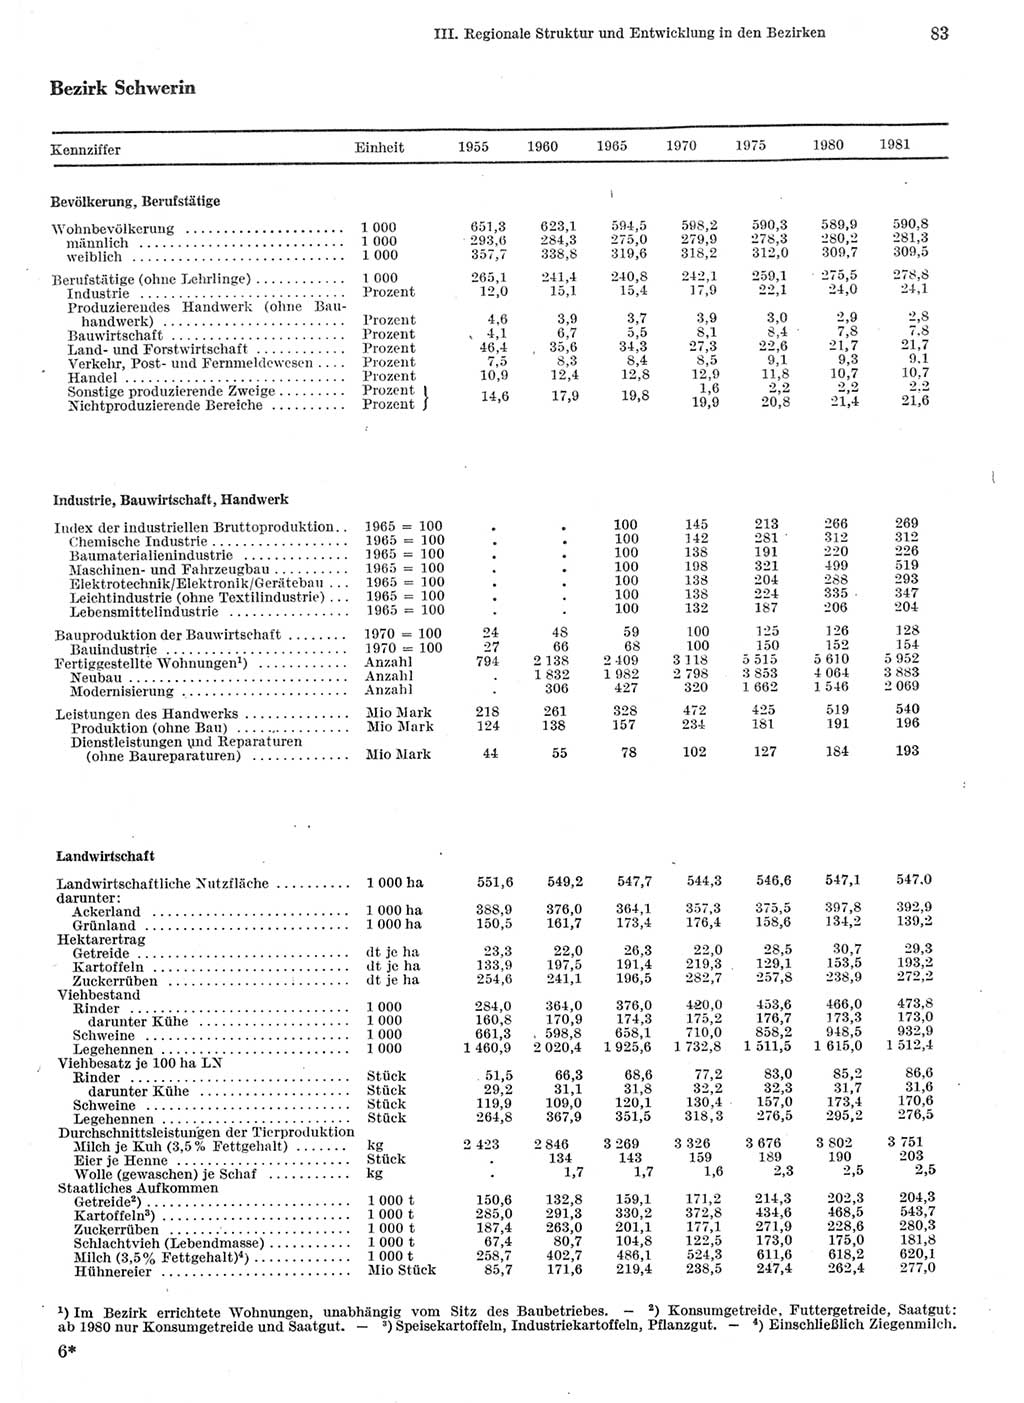 Statistisches Jahrbuch der Deutschen Demokratischen Republik (DDR) 1982, Seite 83 (Stat. Jb. DDR 1982, S. 83)